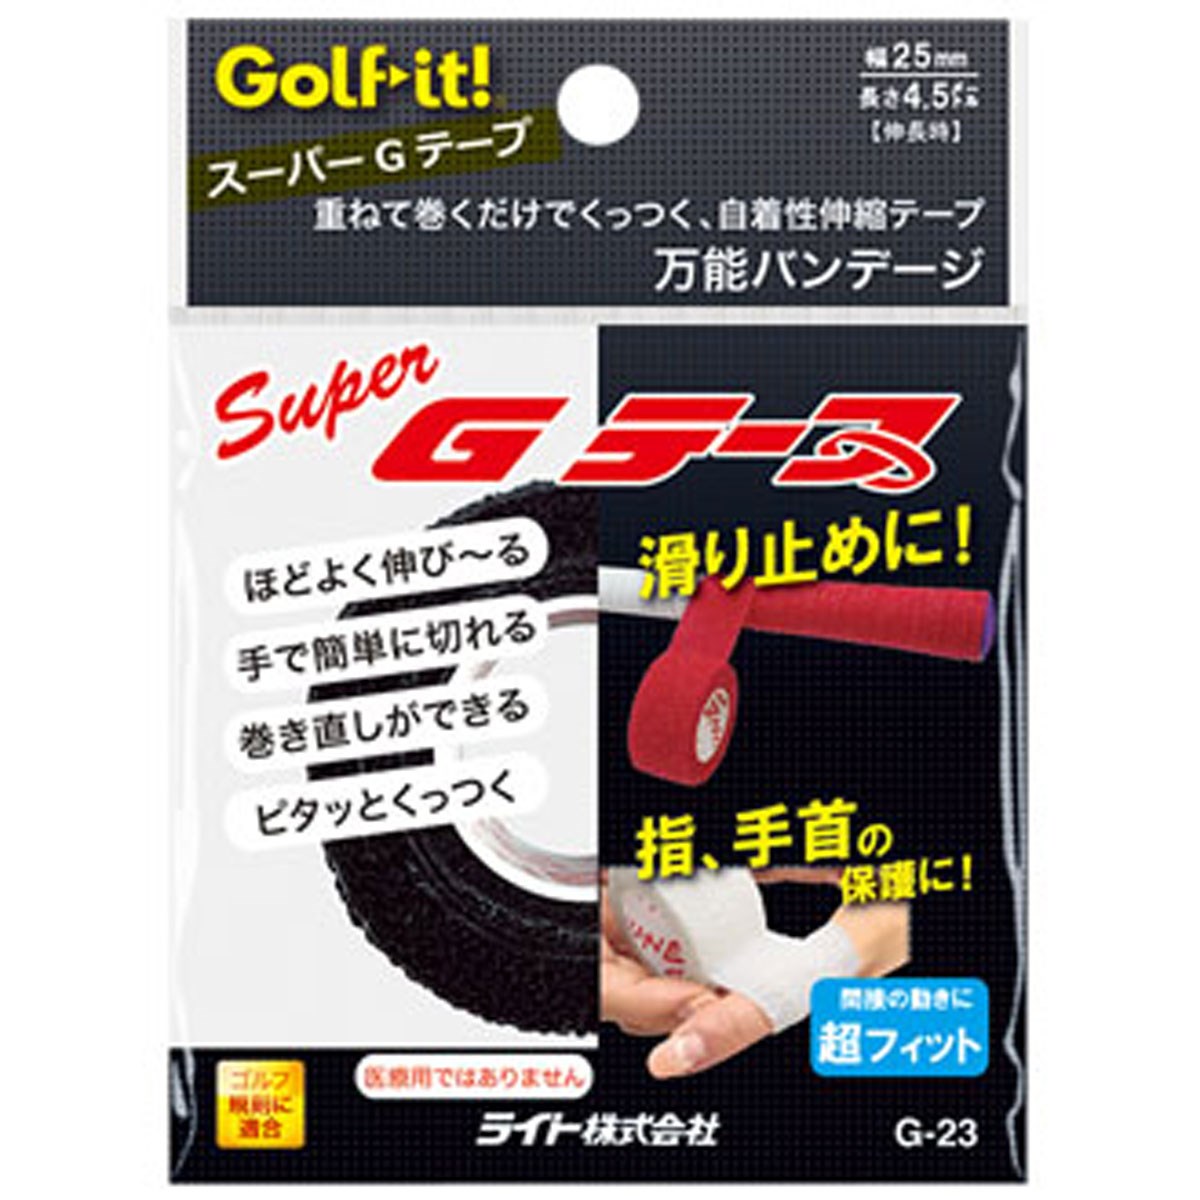 ライト G-23 スーパーGテープ ゴルフの大画像